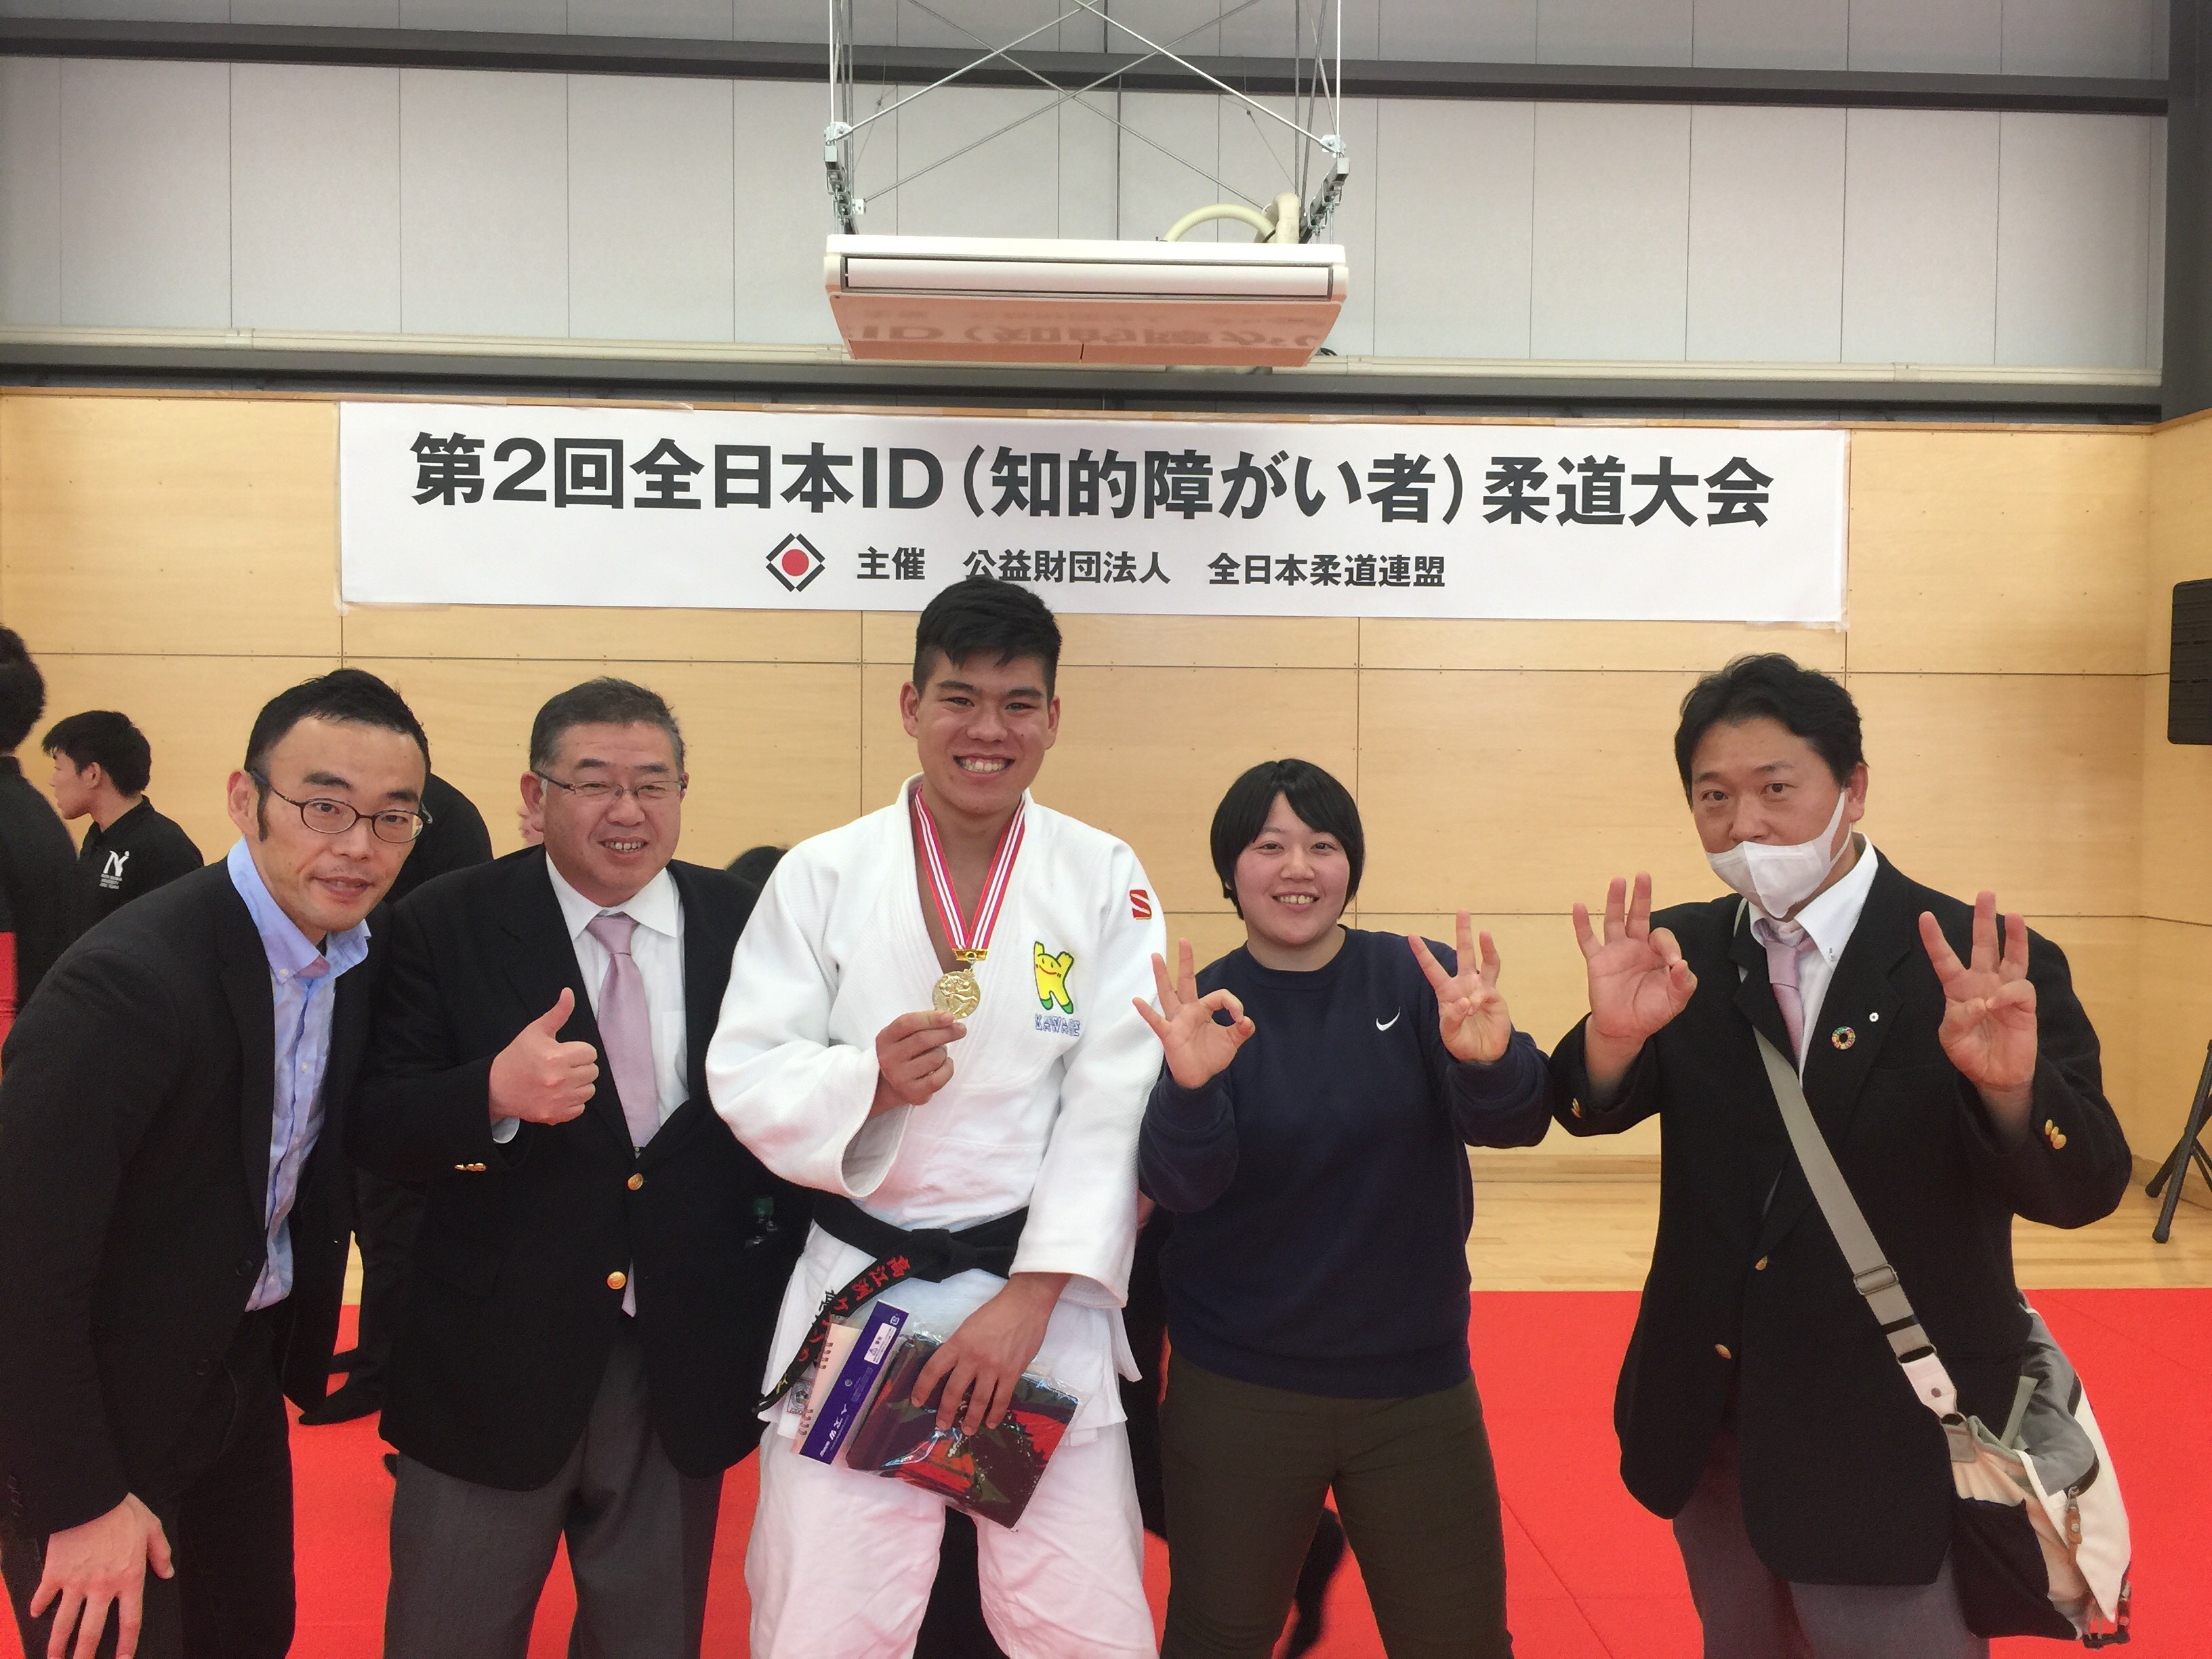 立ったまま投げる という新ルールの衝撃 第2回全日本id 知的障がい者 柔道大会を観戦して Judo3 0スクール